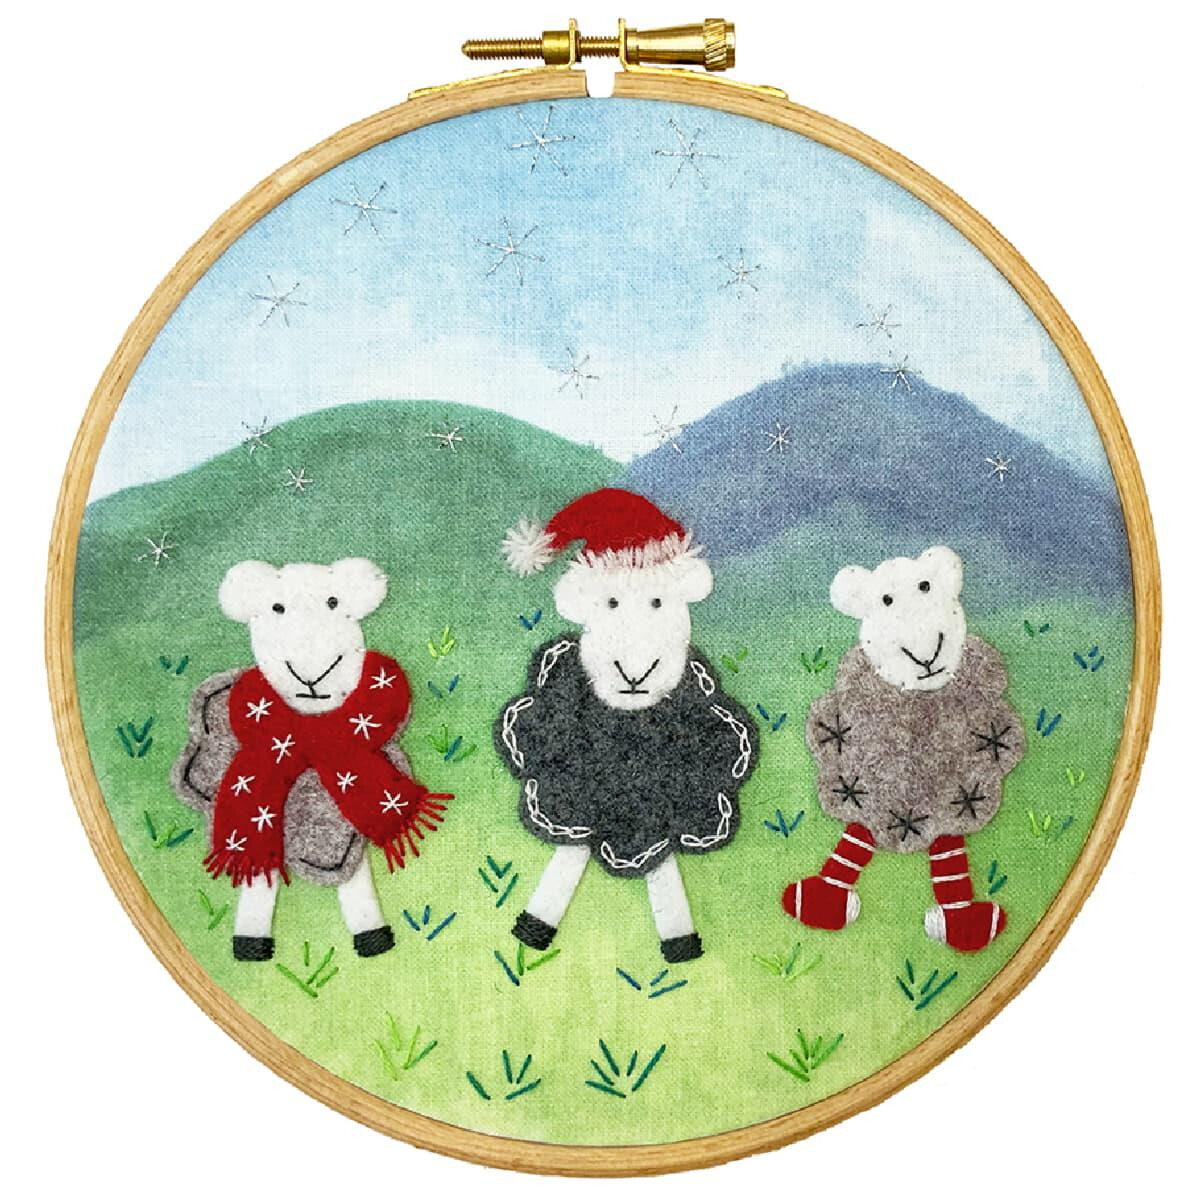 Un cadre de broderie montre trois moutons dans un paysage...